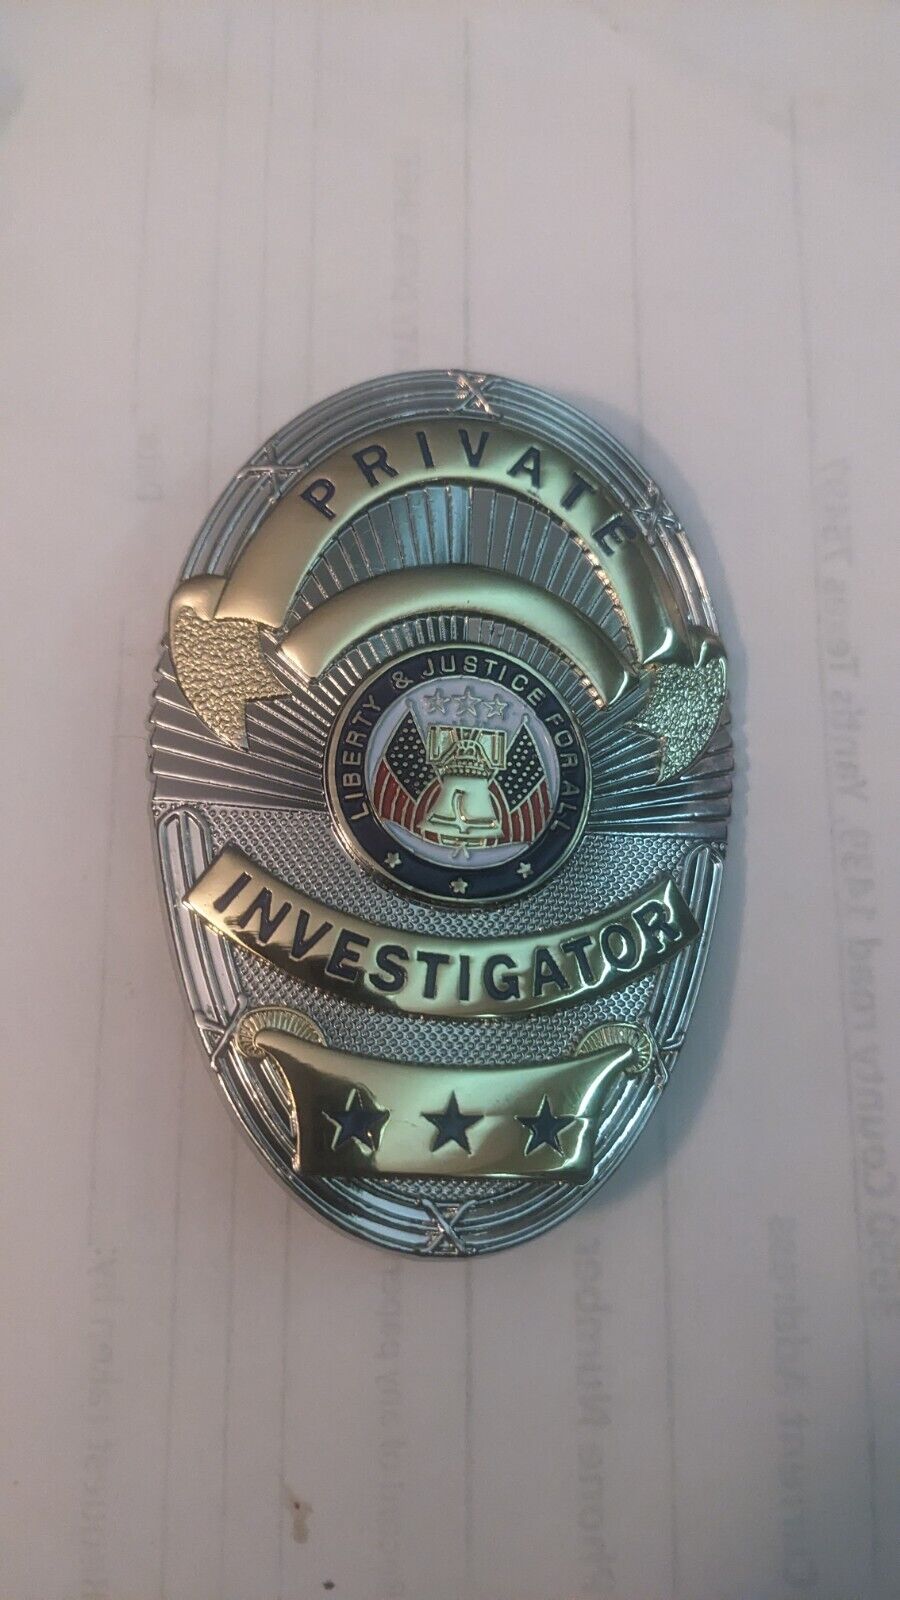  Private investigator badge oval two tone 